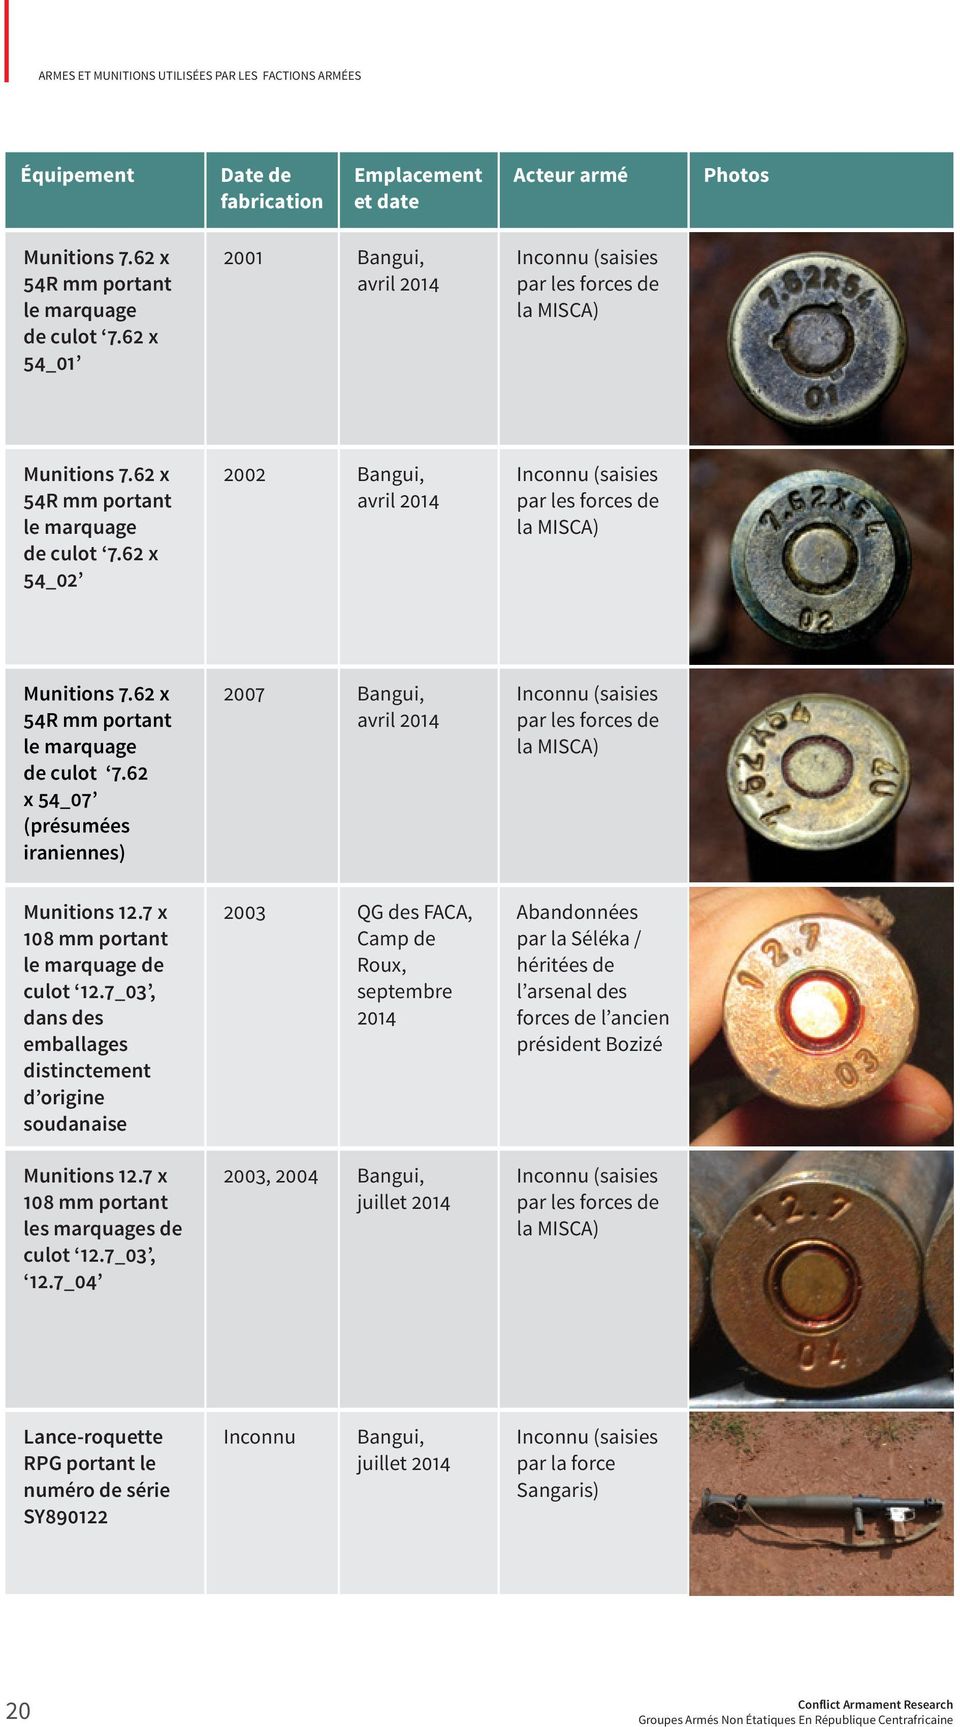 7 x 108 mm portant le marquage de culot 12.7_03, dans des emballages distinctement d origine soudanaise Munitions 12.7 x 108 mm portant les marquages de culot 12.7_03, 12.